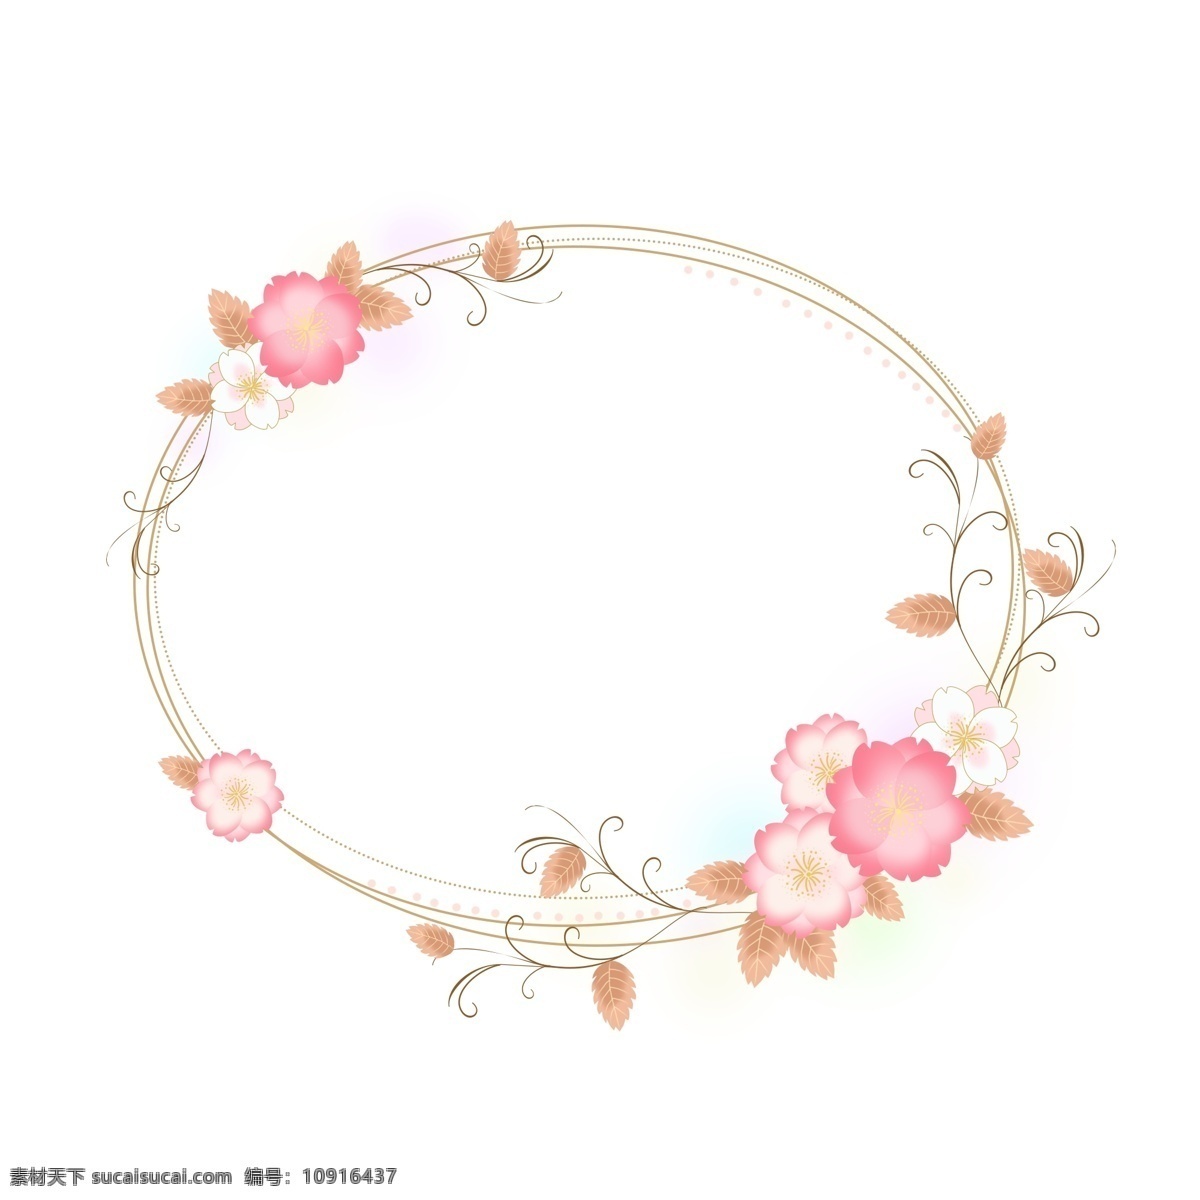 圆形 卡通 樱花 浪漫 花卉 边框 粉色 手绘 植物